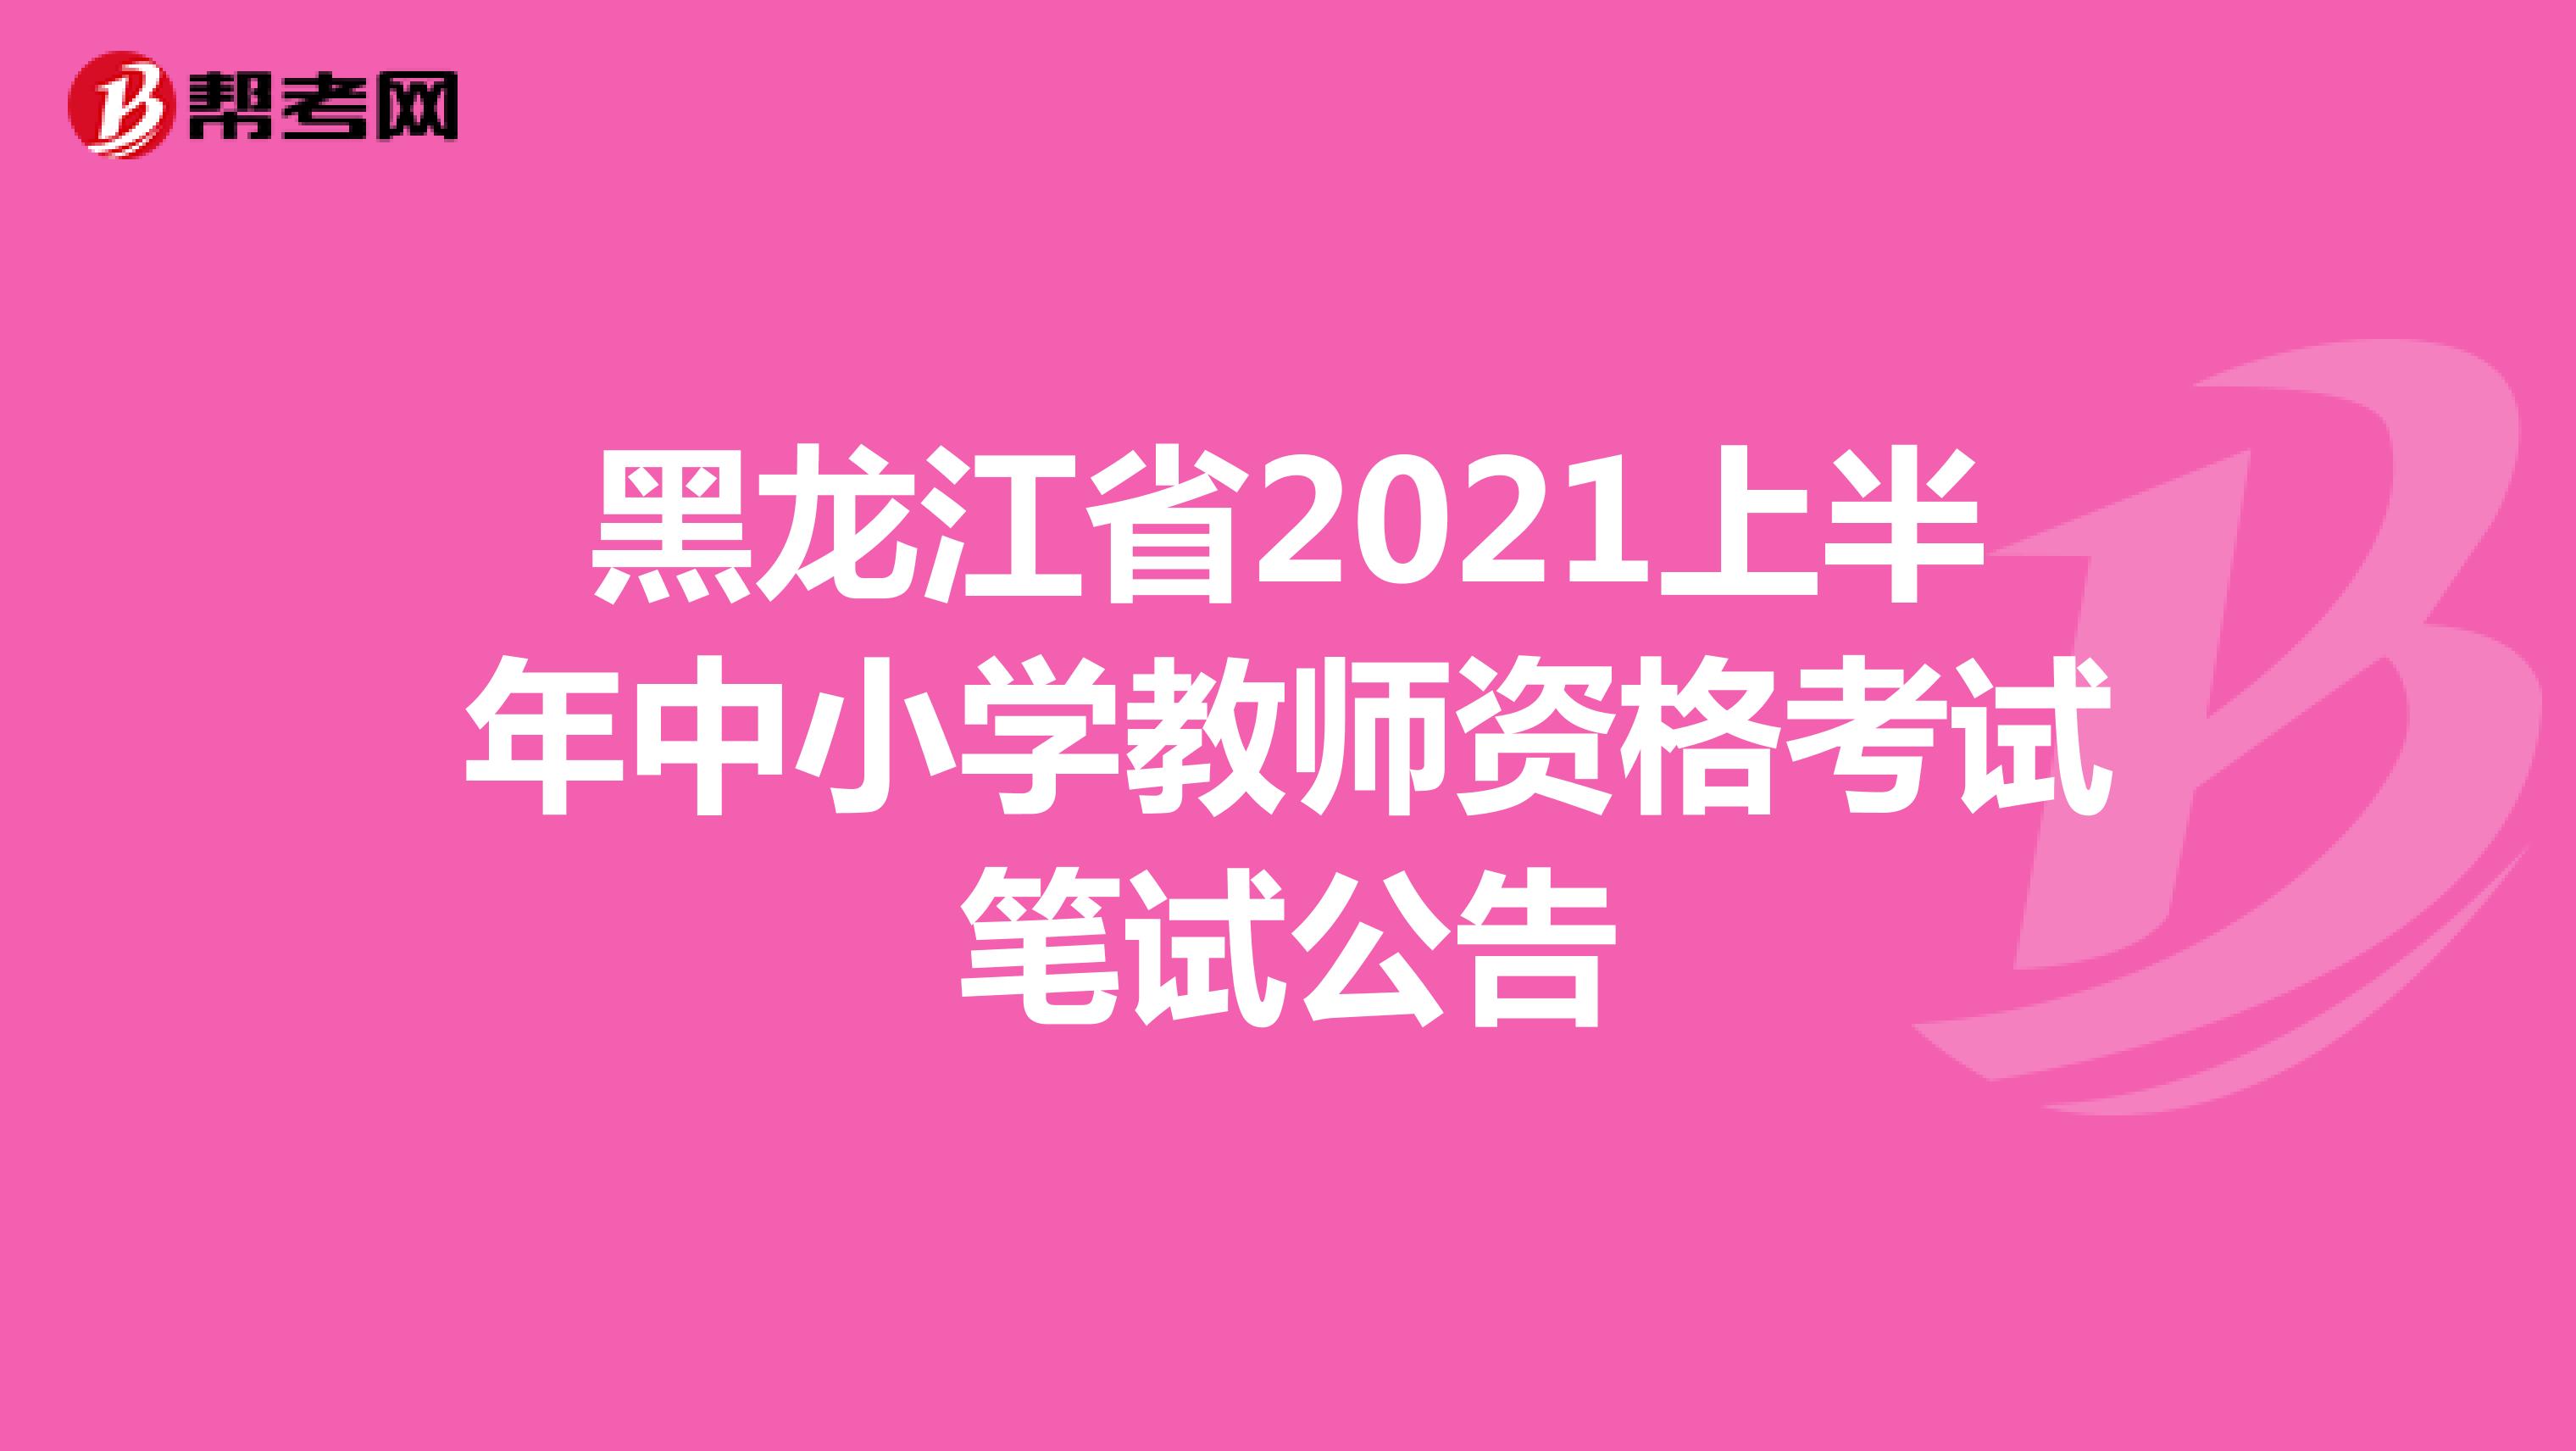 黑龙江省2021上半年中小学教师资格考试笔试公告